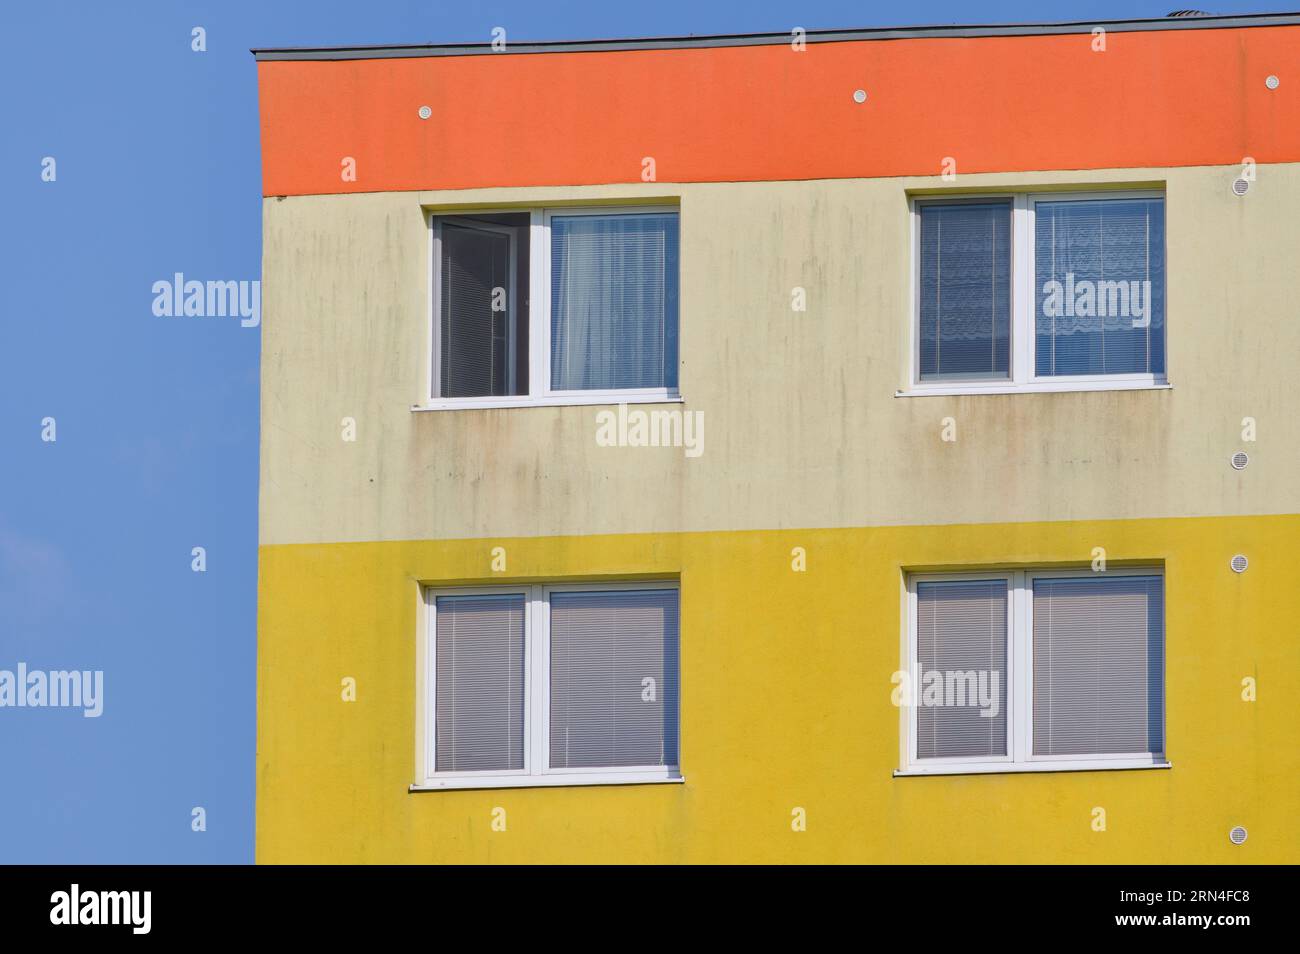 Farbenfroher Wohnblock in Wohngegend. Geometrische Linien. Stockfoto